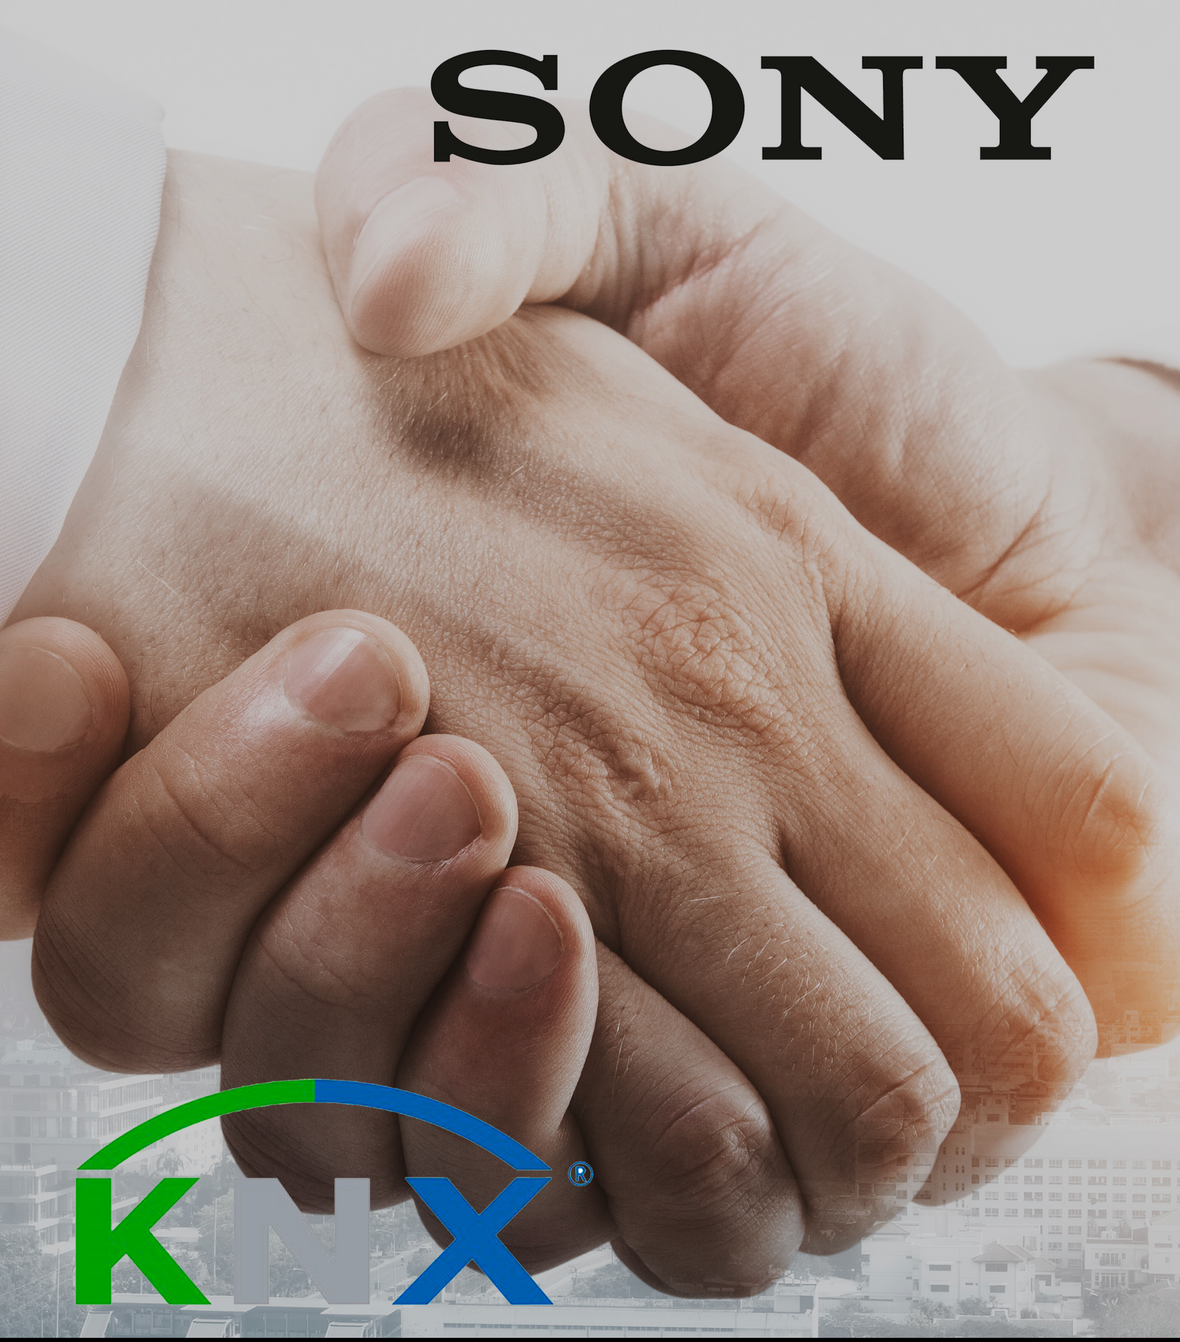 KNX da la bienvenida a Sony como miembro n.º 500: la colaboración destaca la creciente popularidad de KNX IoT